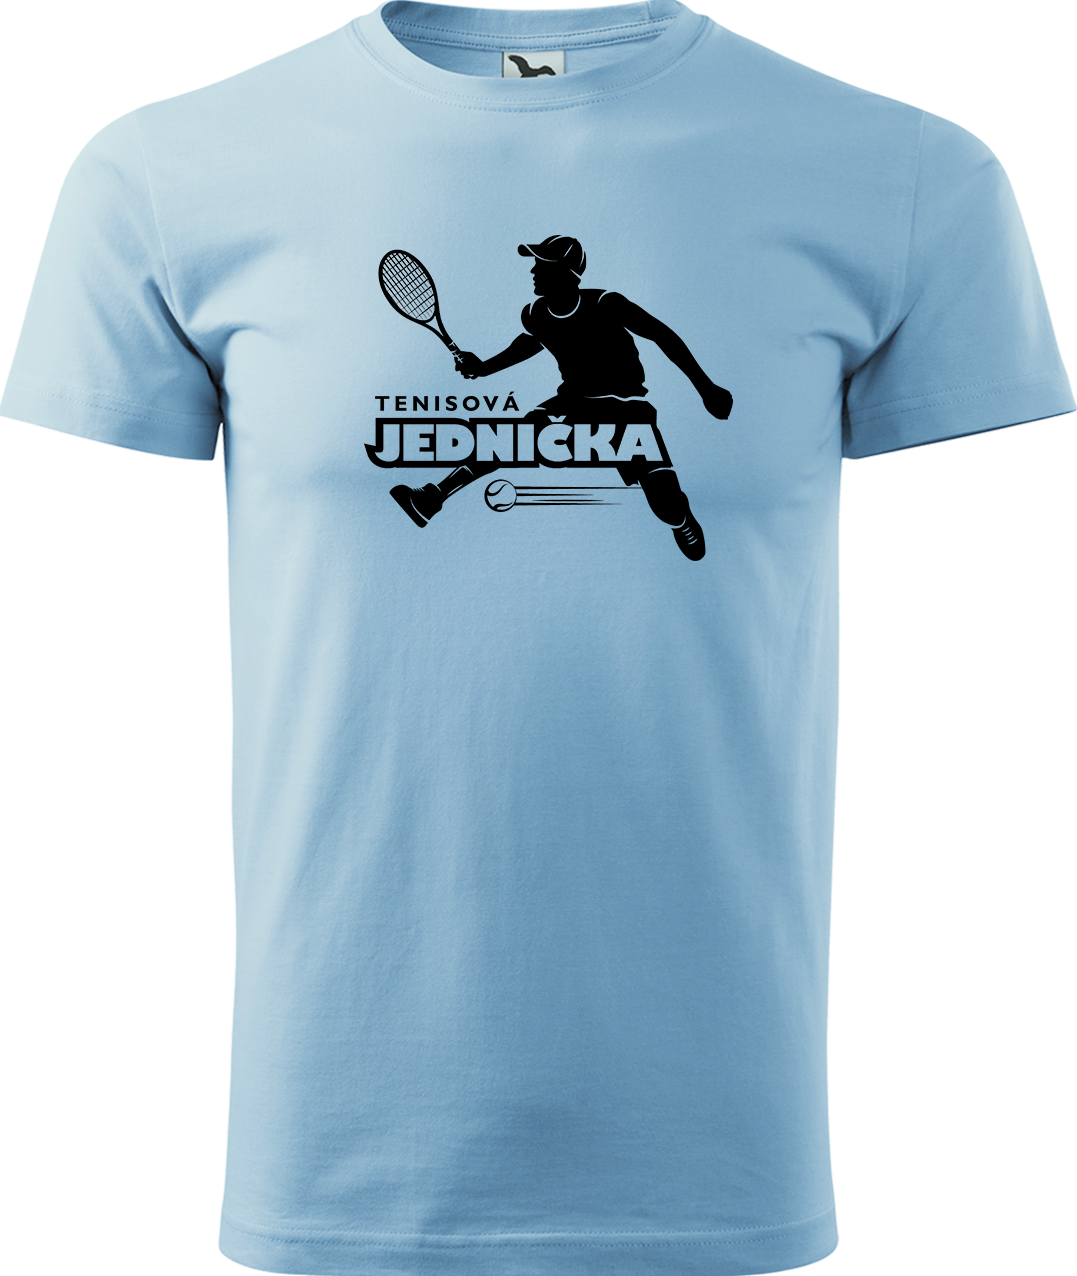 Tenisové tričko - Tenisová jednička Velikost: M, Barva: Nebesky modrá (15)